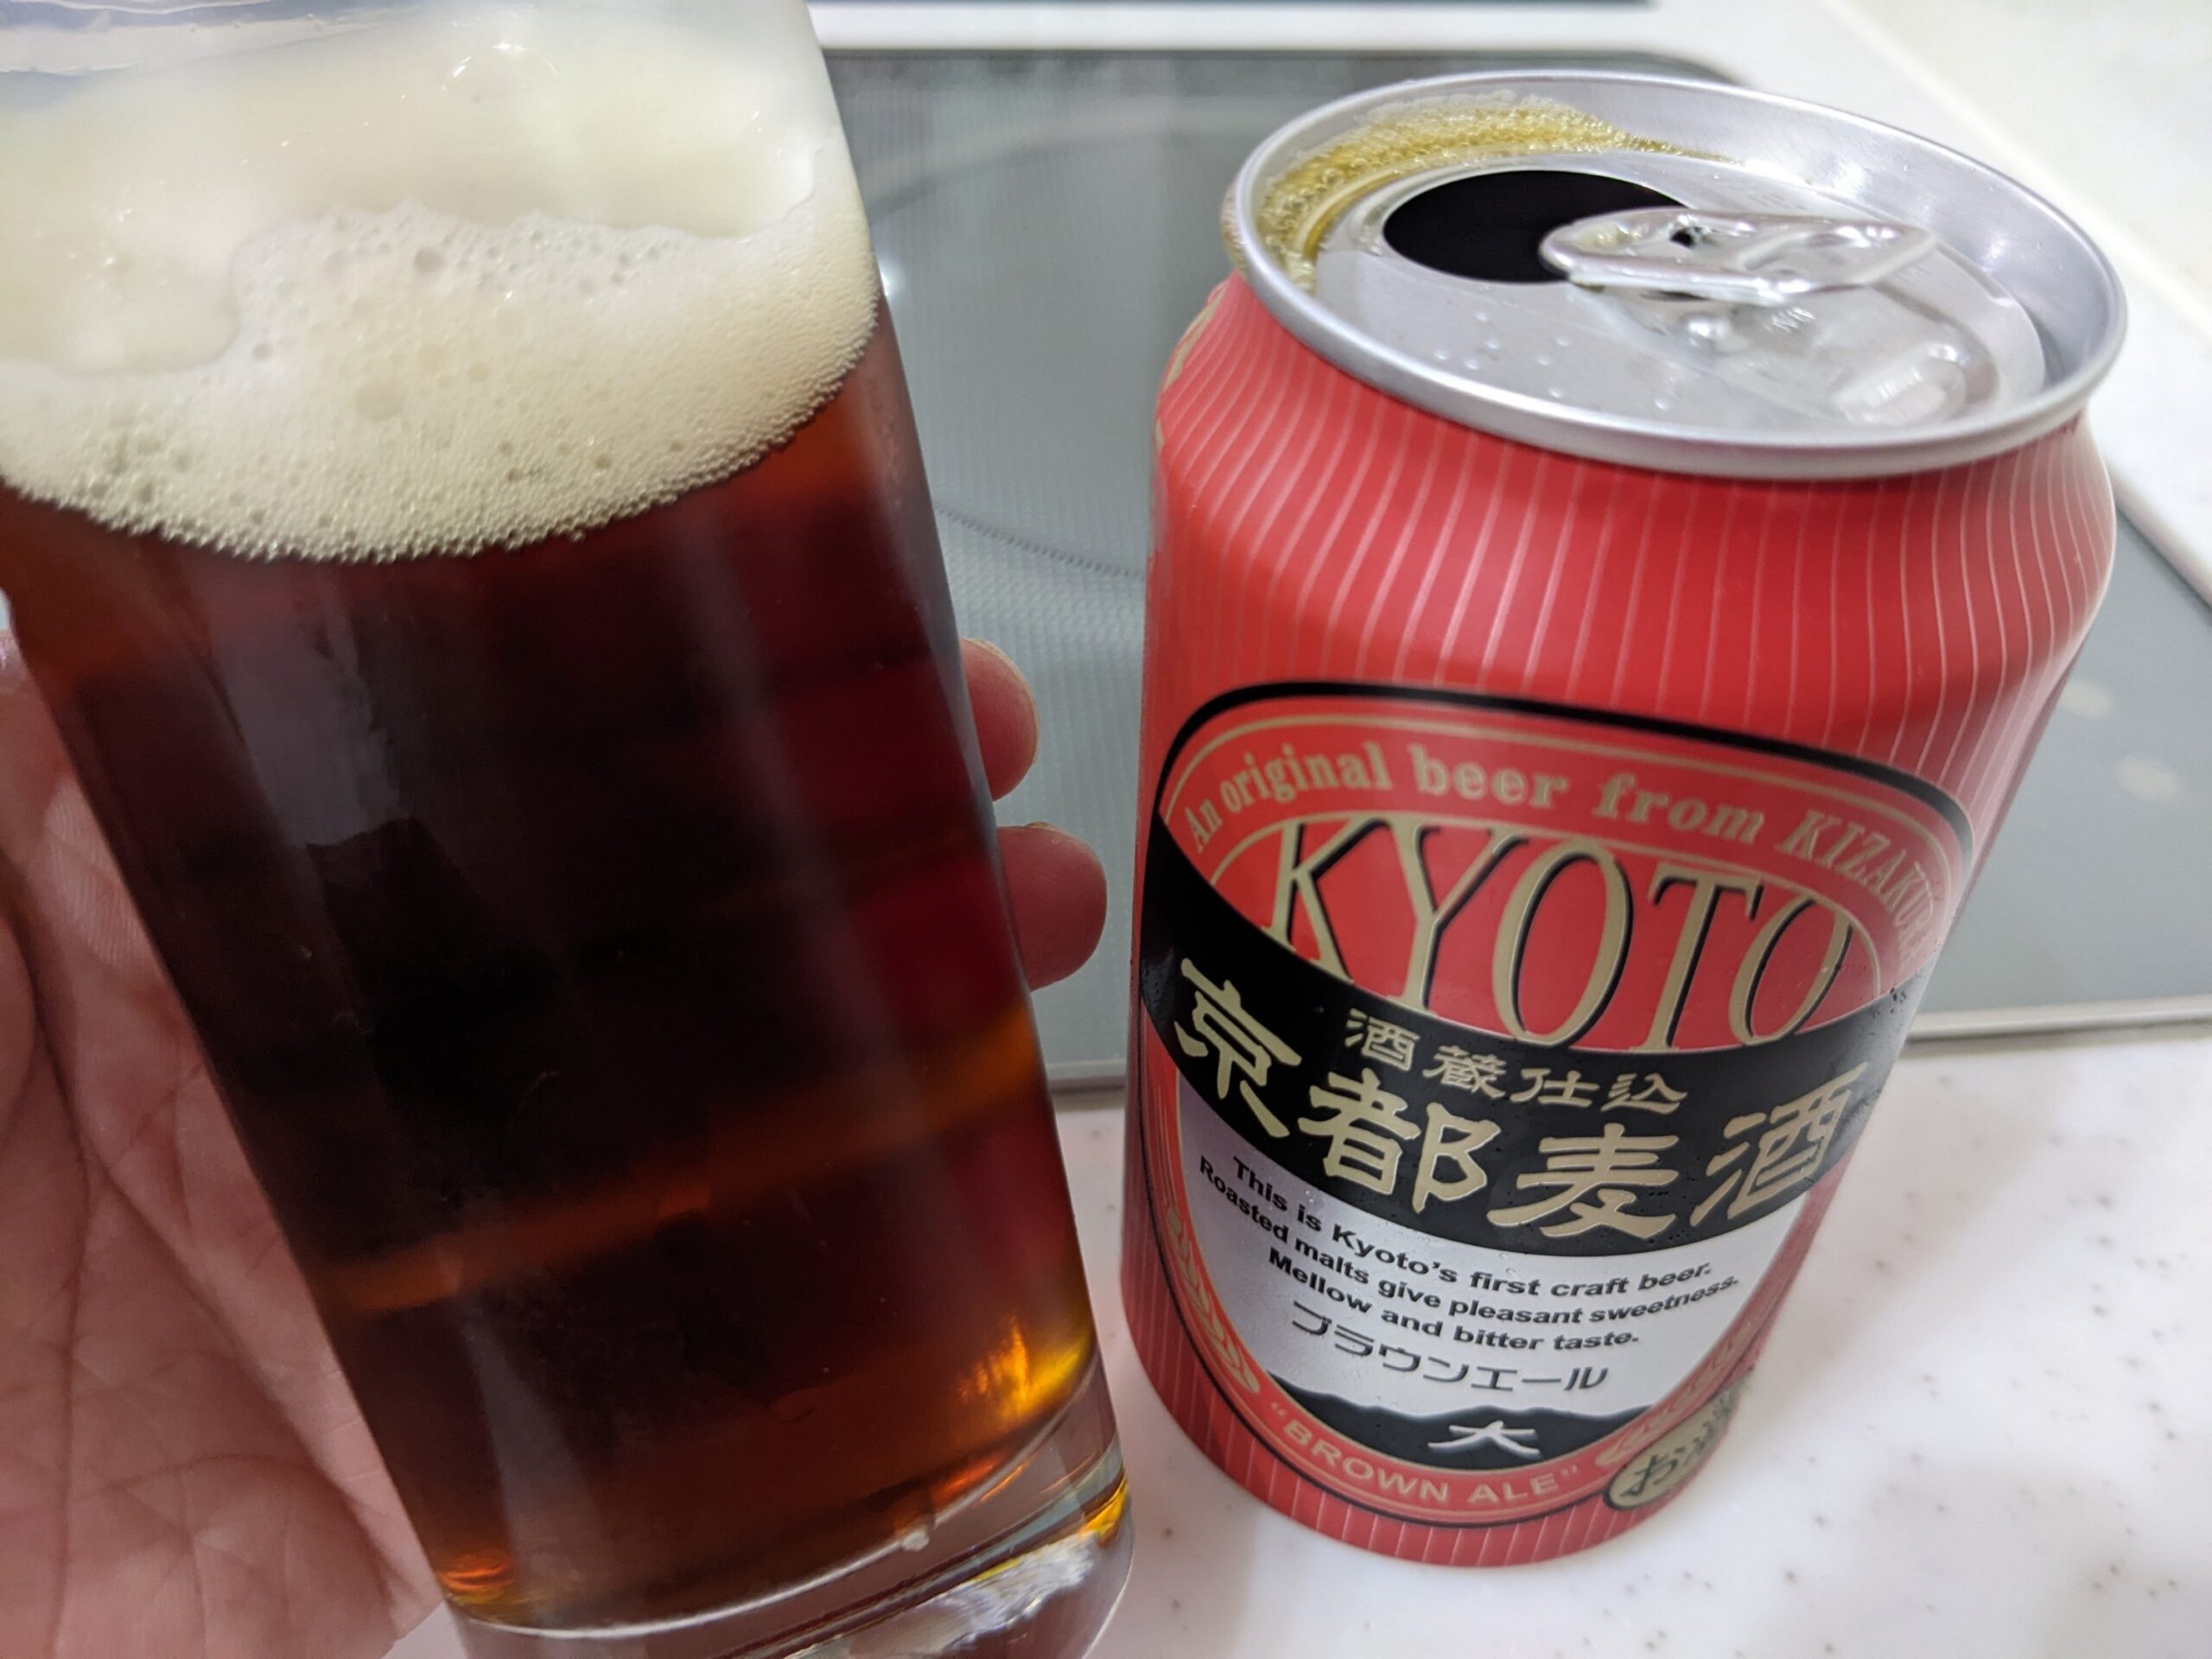 「京都麦酒ブラウンエール 」が入っているグラスを傾けているところ